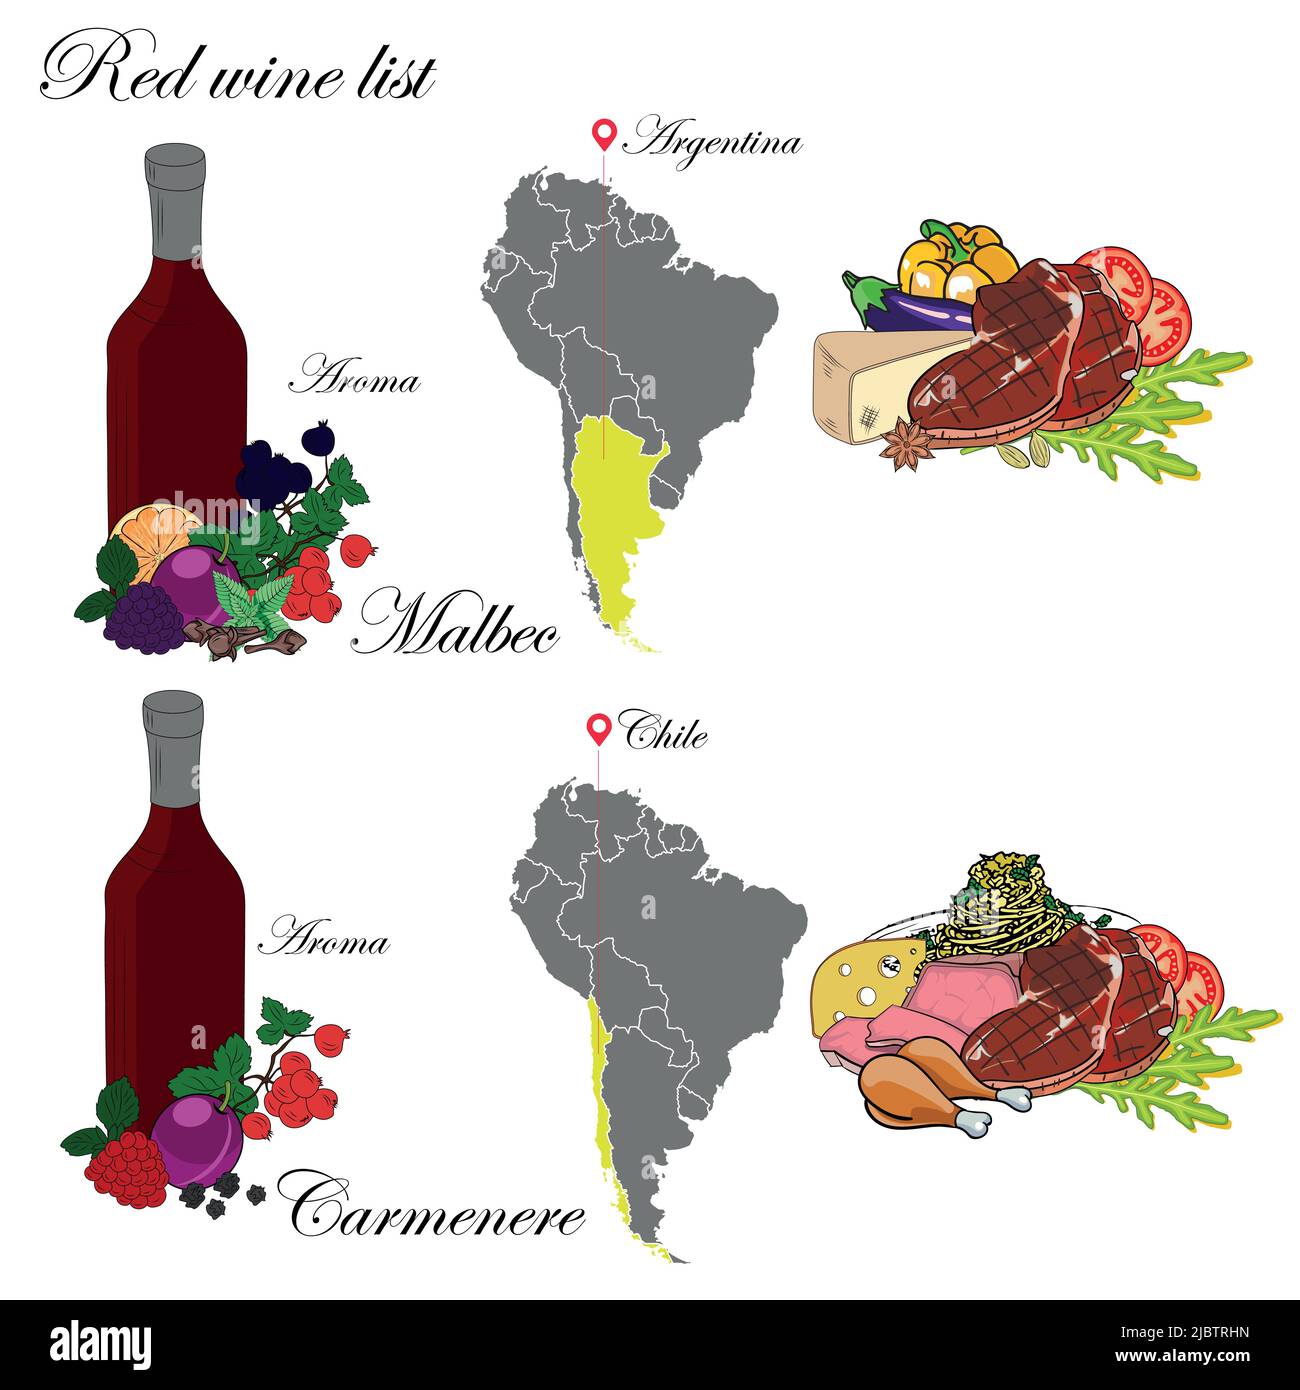 Malbec und Carmenere. Die Weinkarte. Eine Illustration eines Rotweines mit einem Beispiel von Aromen, einer Weinkarte und Speisen, die zum Wein passen. Stock Vektor